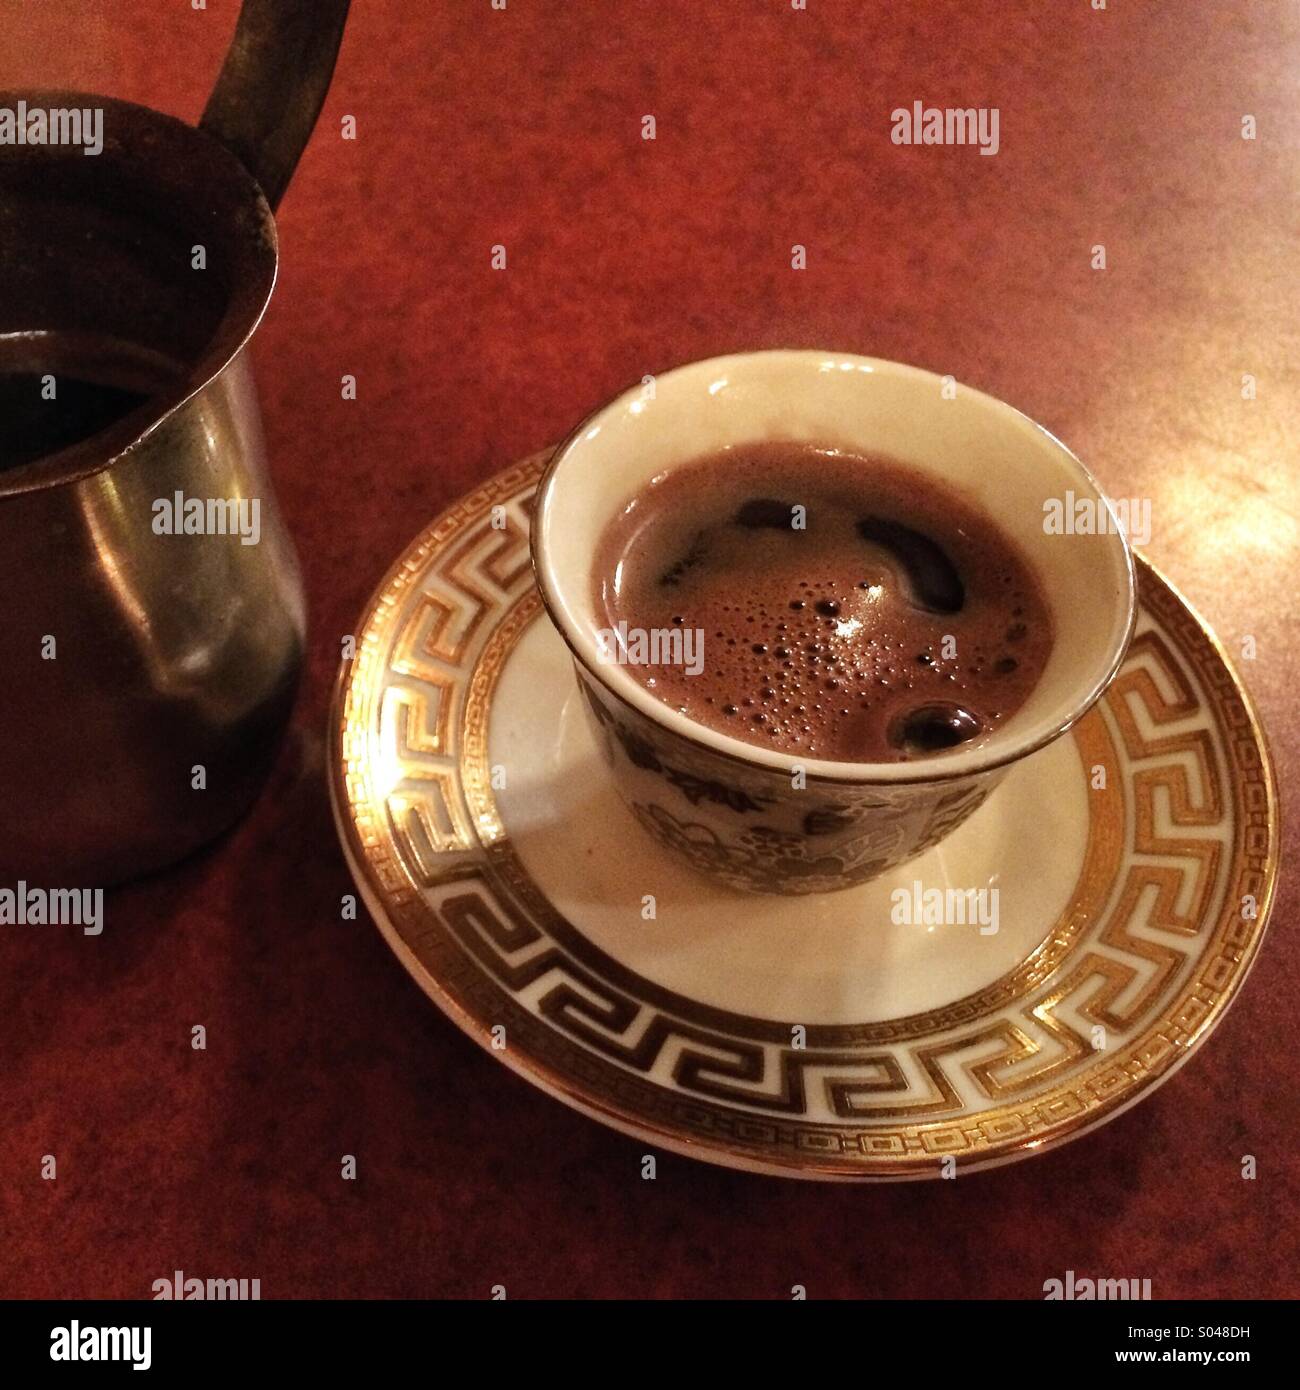 Türkischen Kaffee in einem reich verzierten Cup. Stockfoto